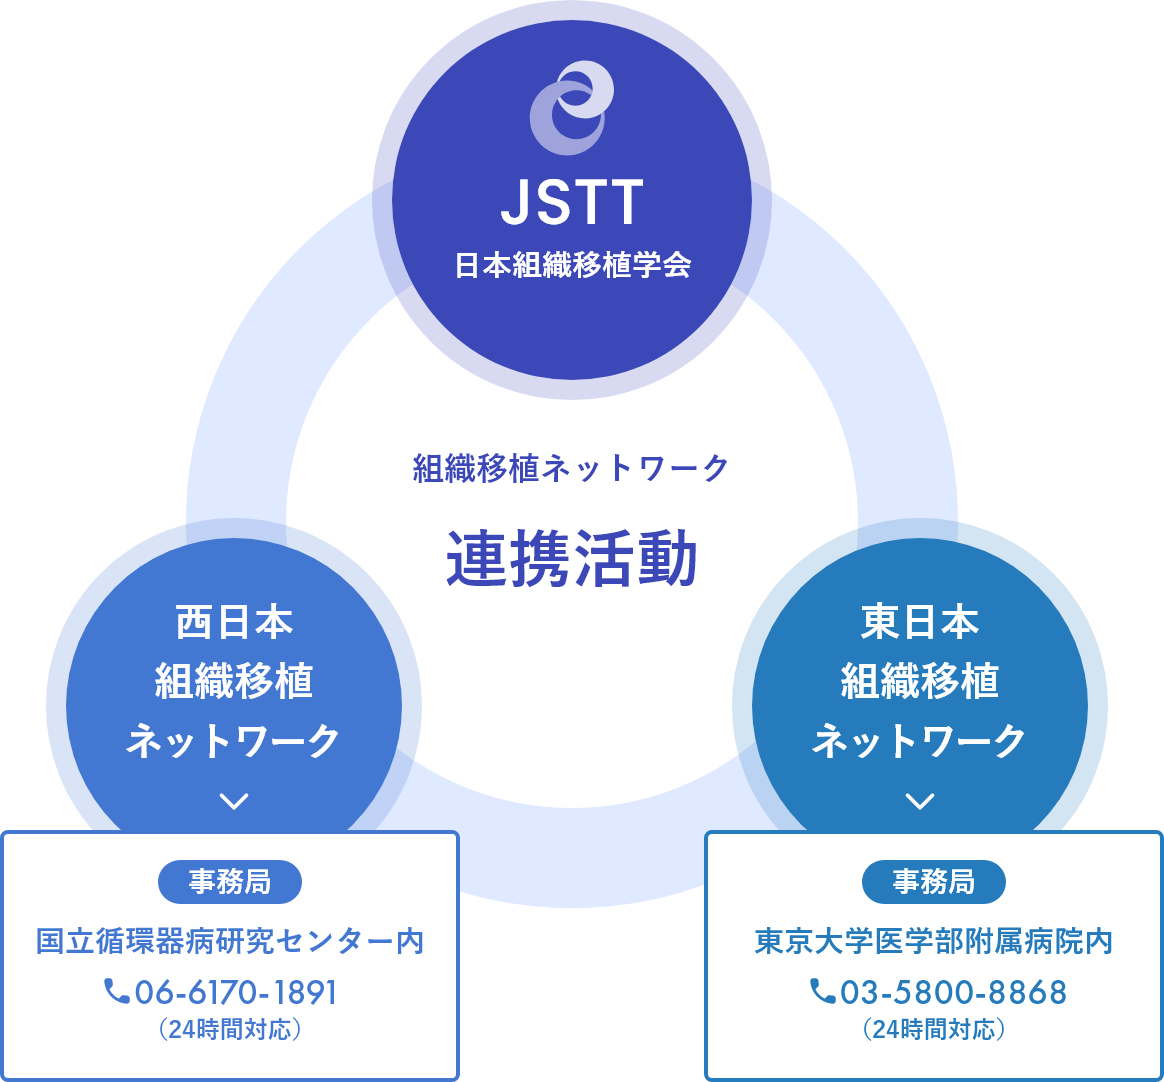 日本組織移植学会と西日本組織移植ネットワークと東日本組織移植ネットワークとの連携活動イメージ